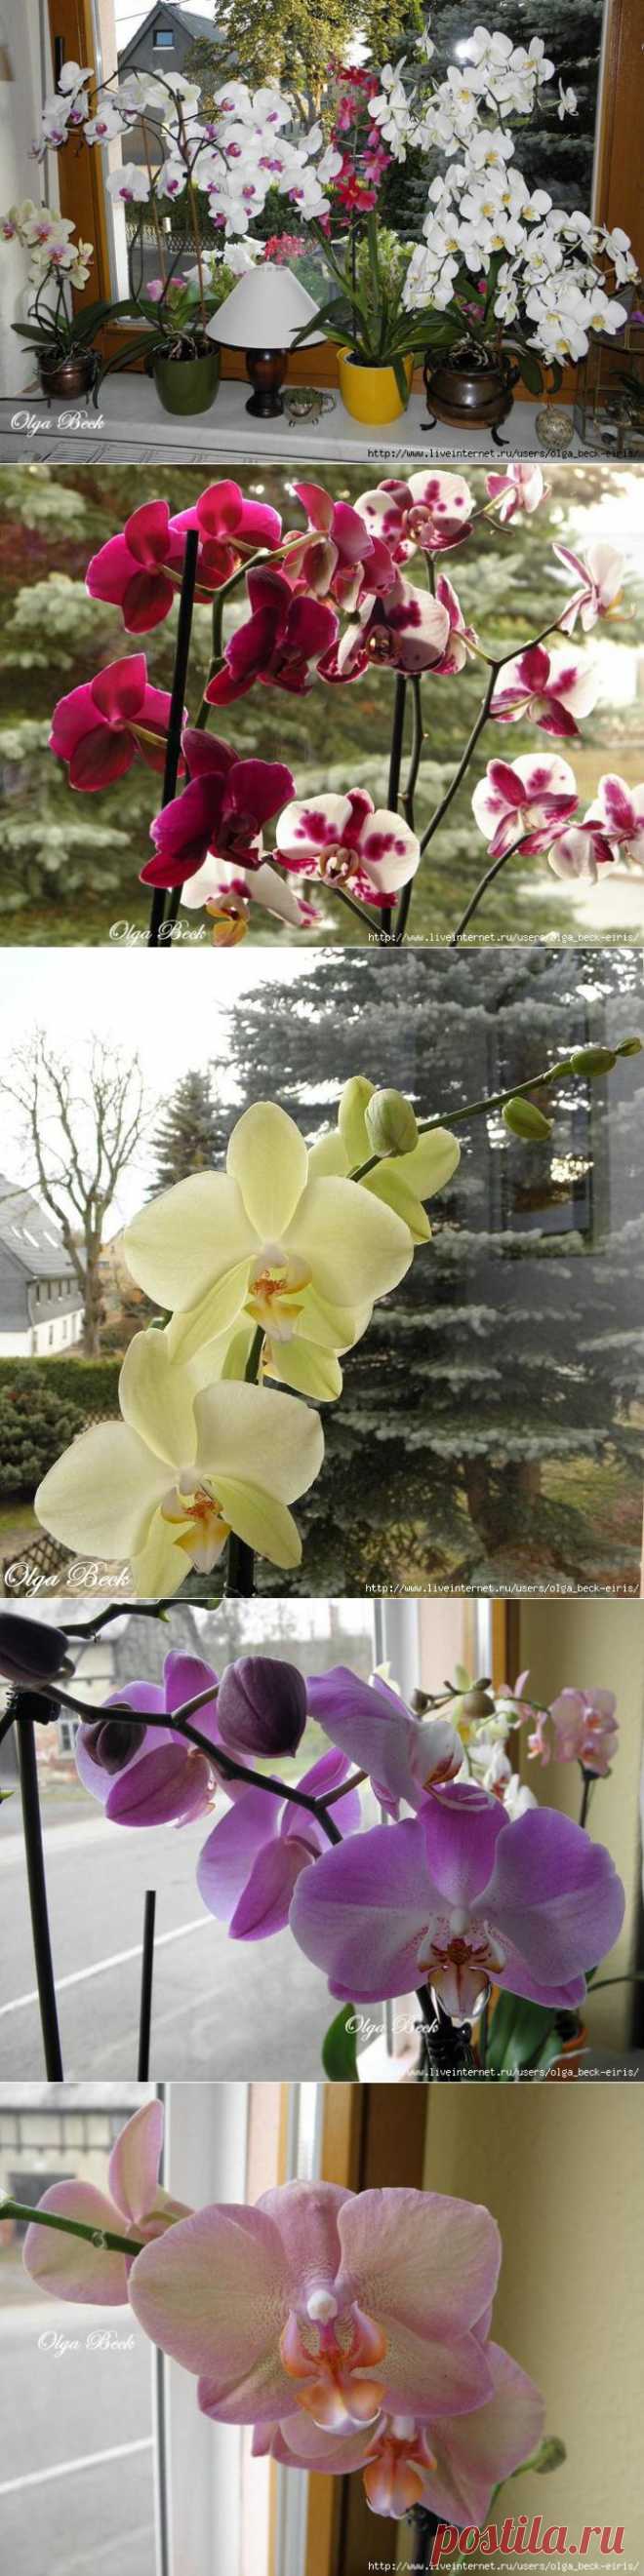 Орхидеи Phalaenopsis . Ошибки и опыт по уходу.